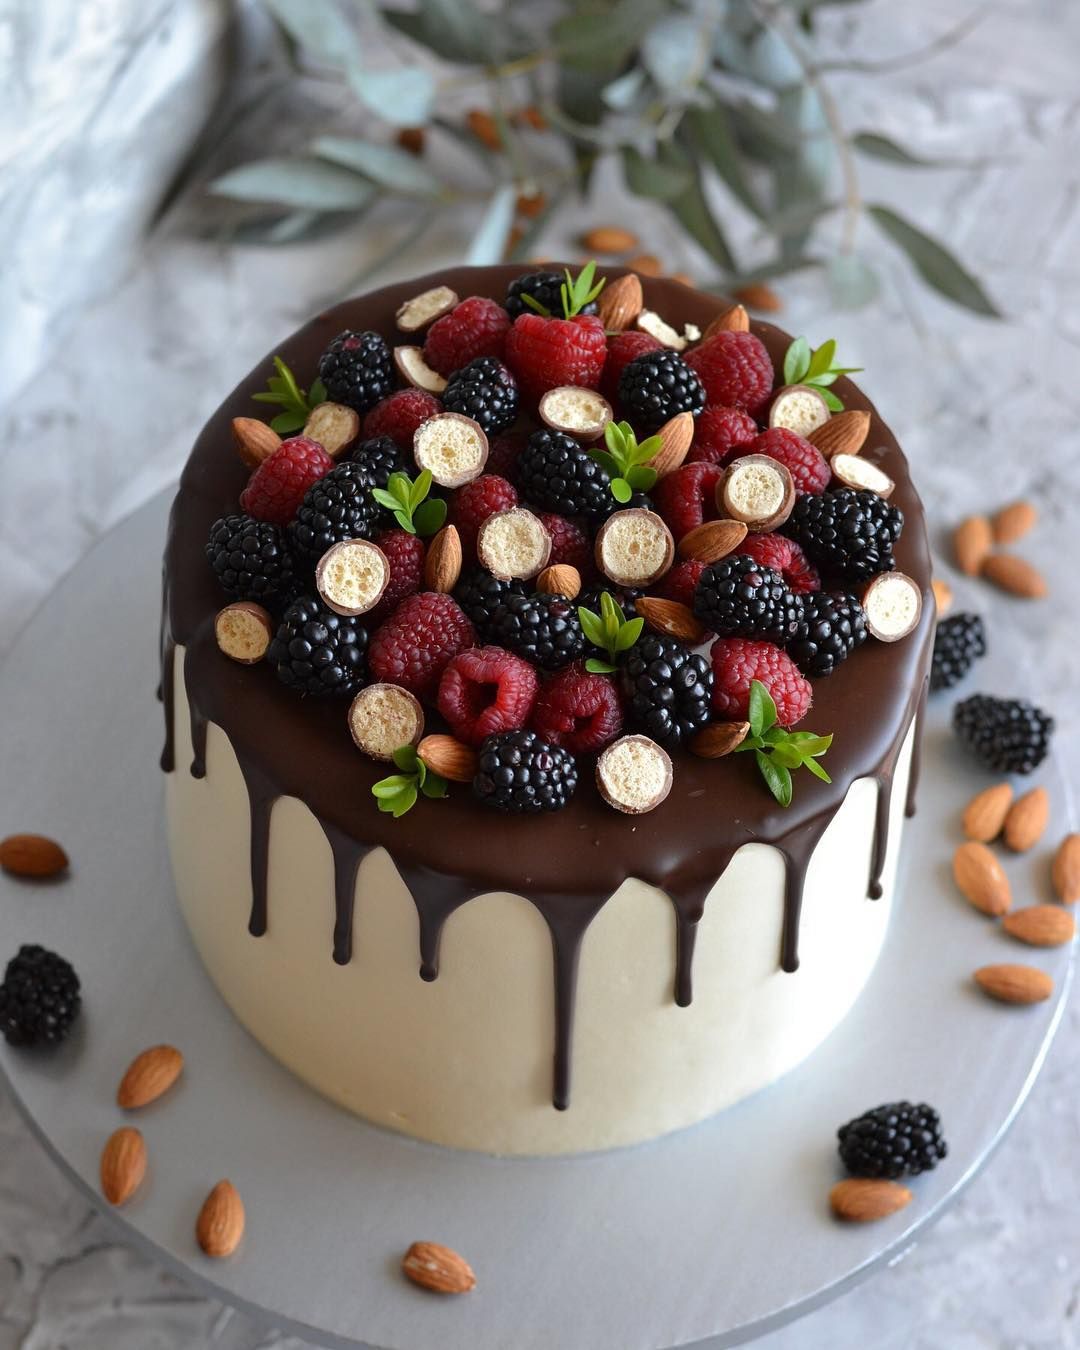 Как украсить красиво торт фруктами: Как украсить торт фруктами и ягодами в домашних условиях: идеи и пошаговые рецепты